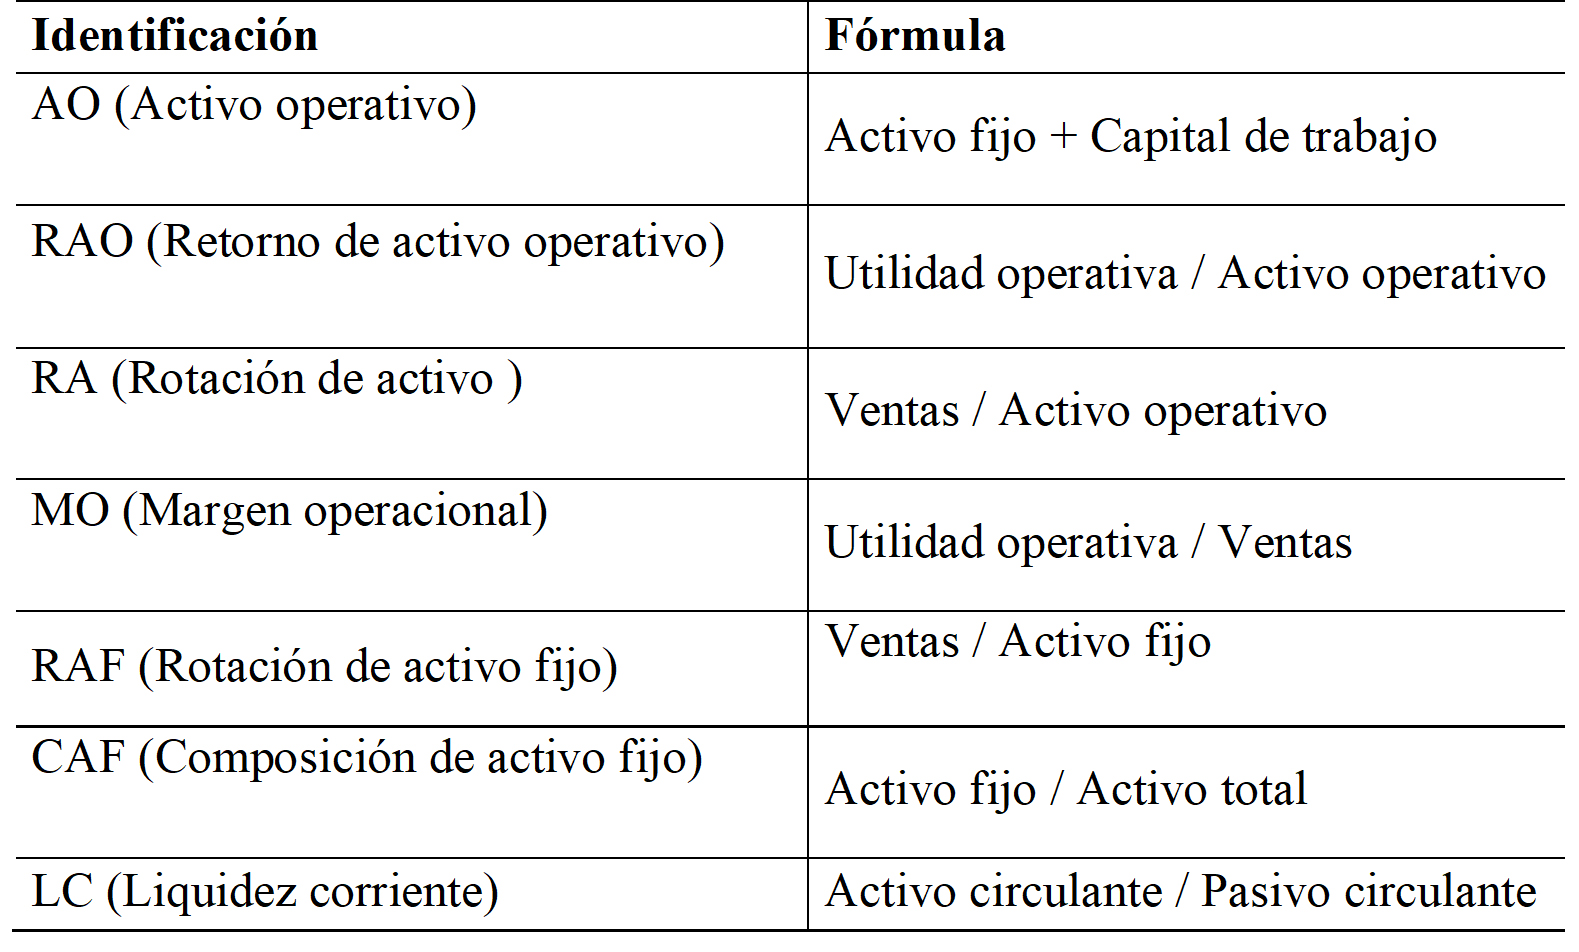 Variables
empeladas y formas de cálculo ($)